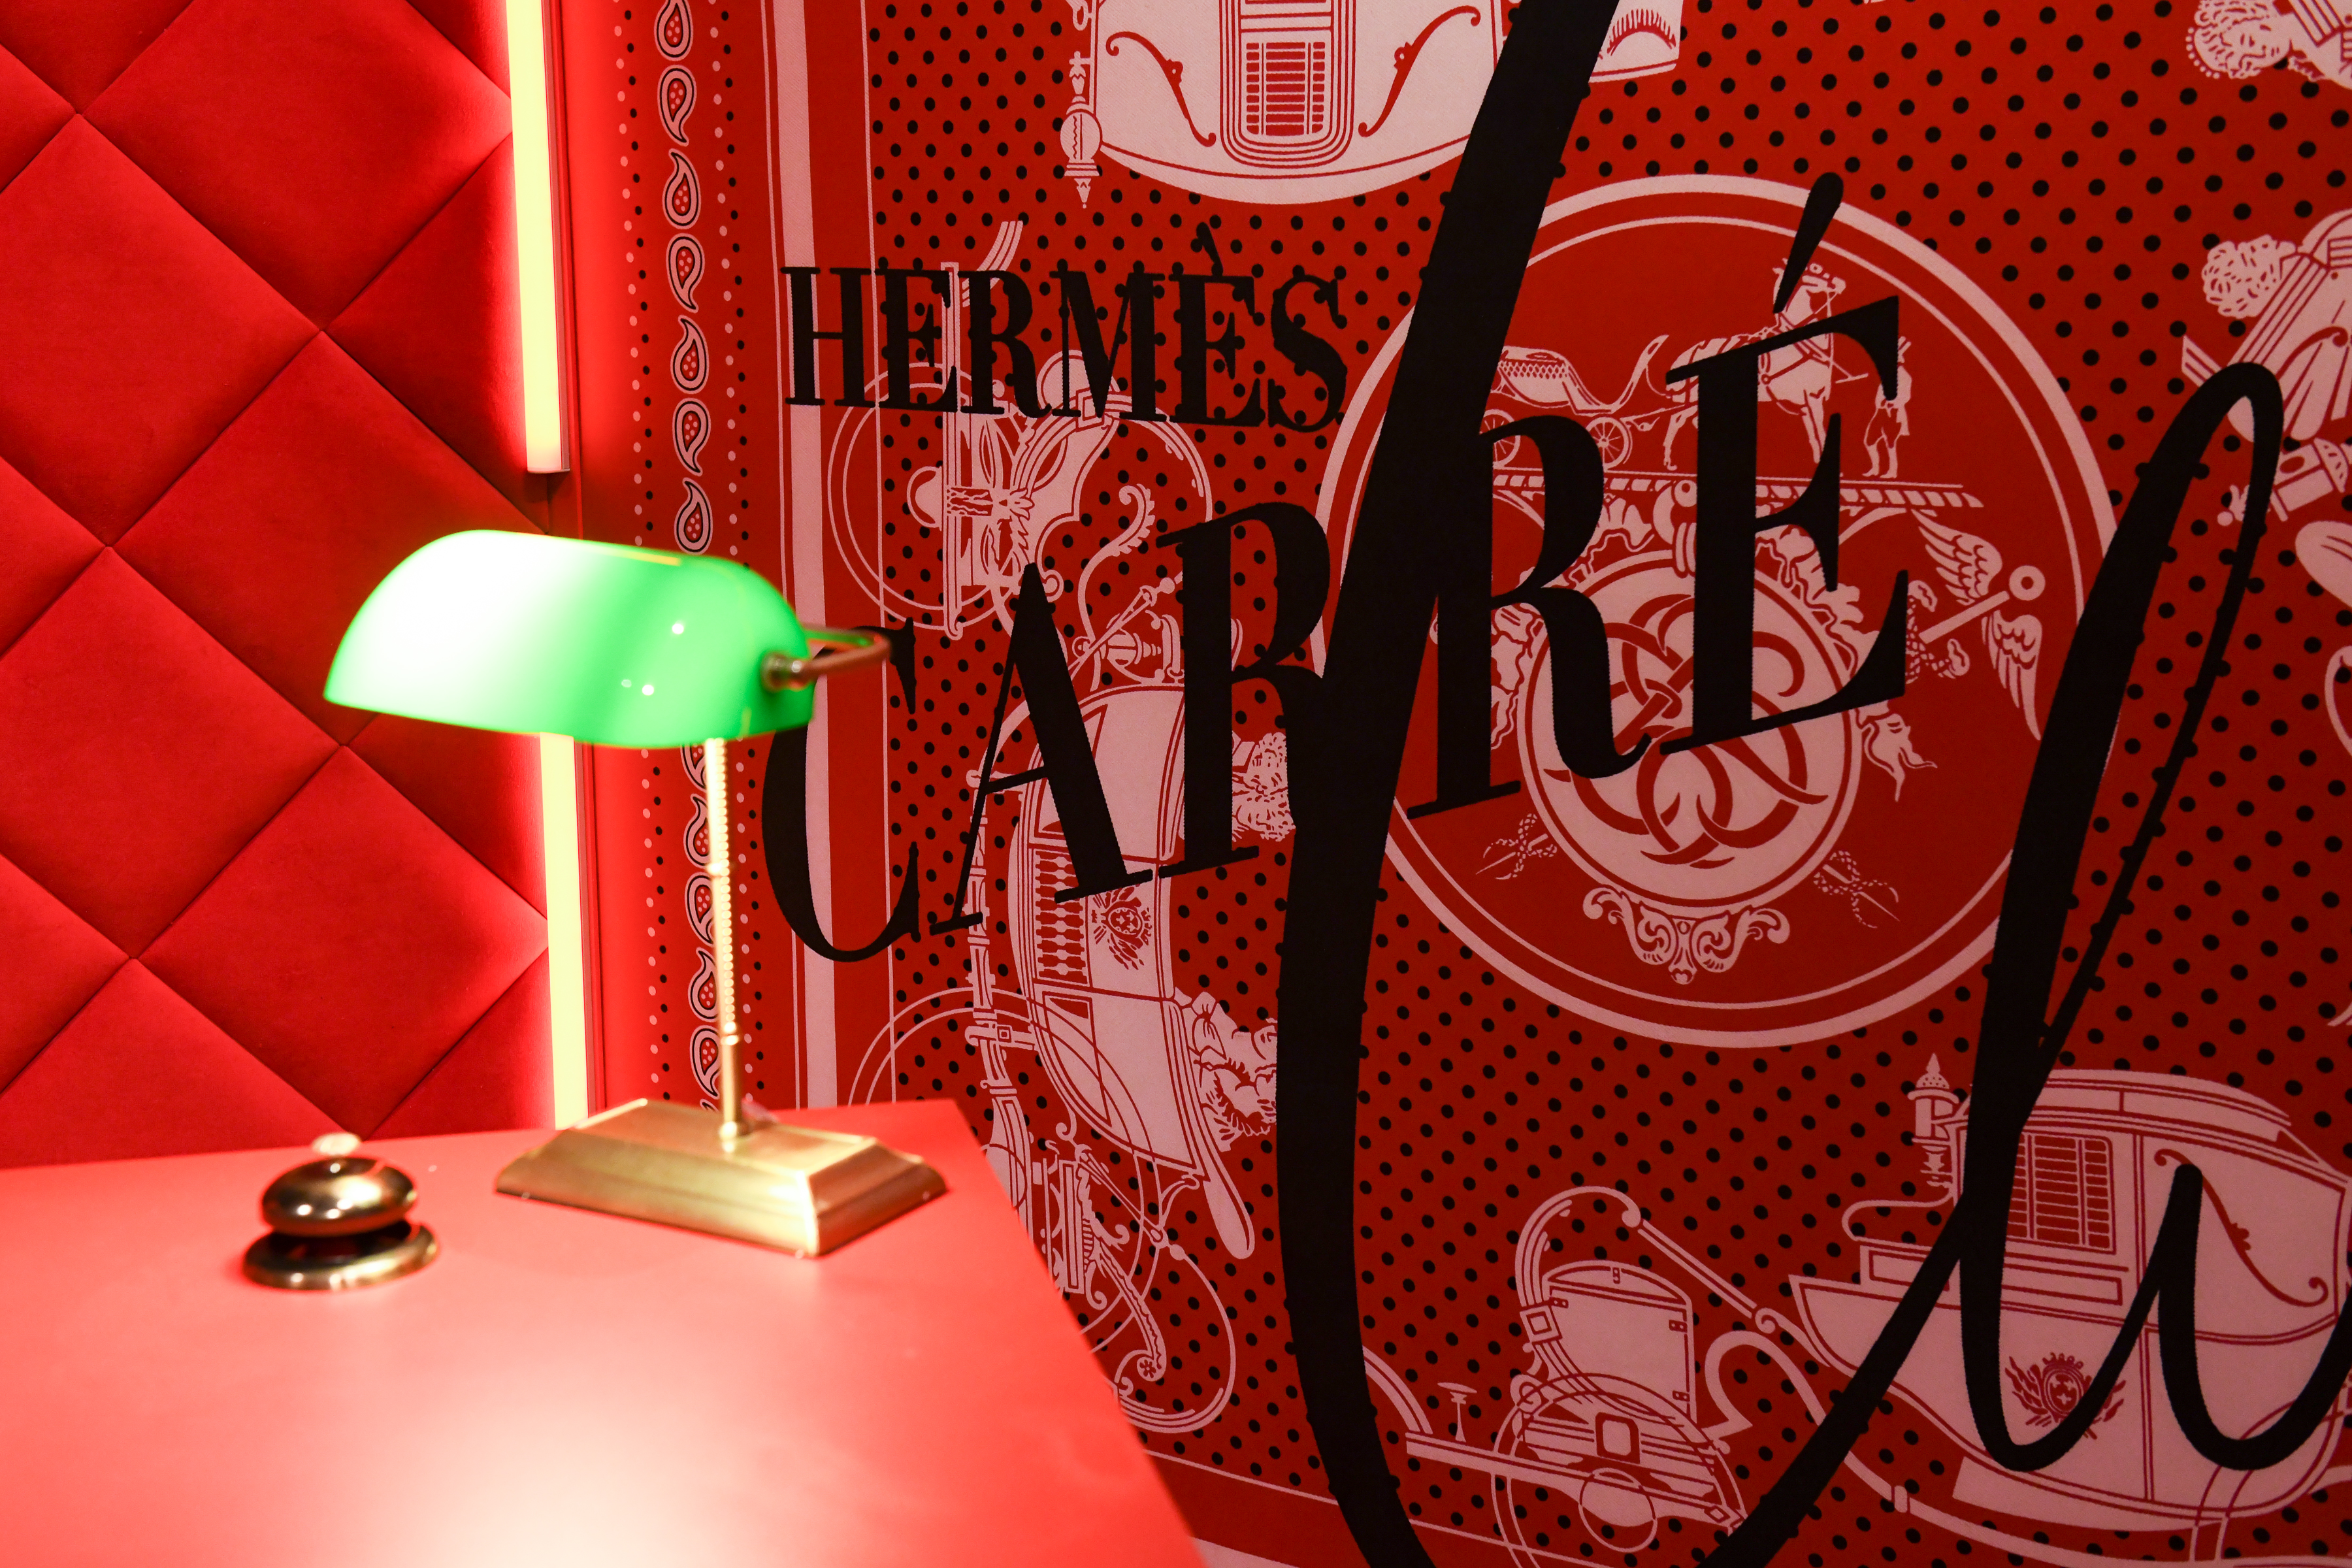 Milano - Hermès Carré Club